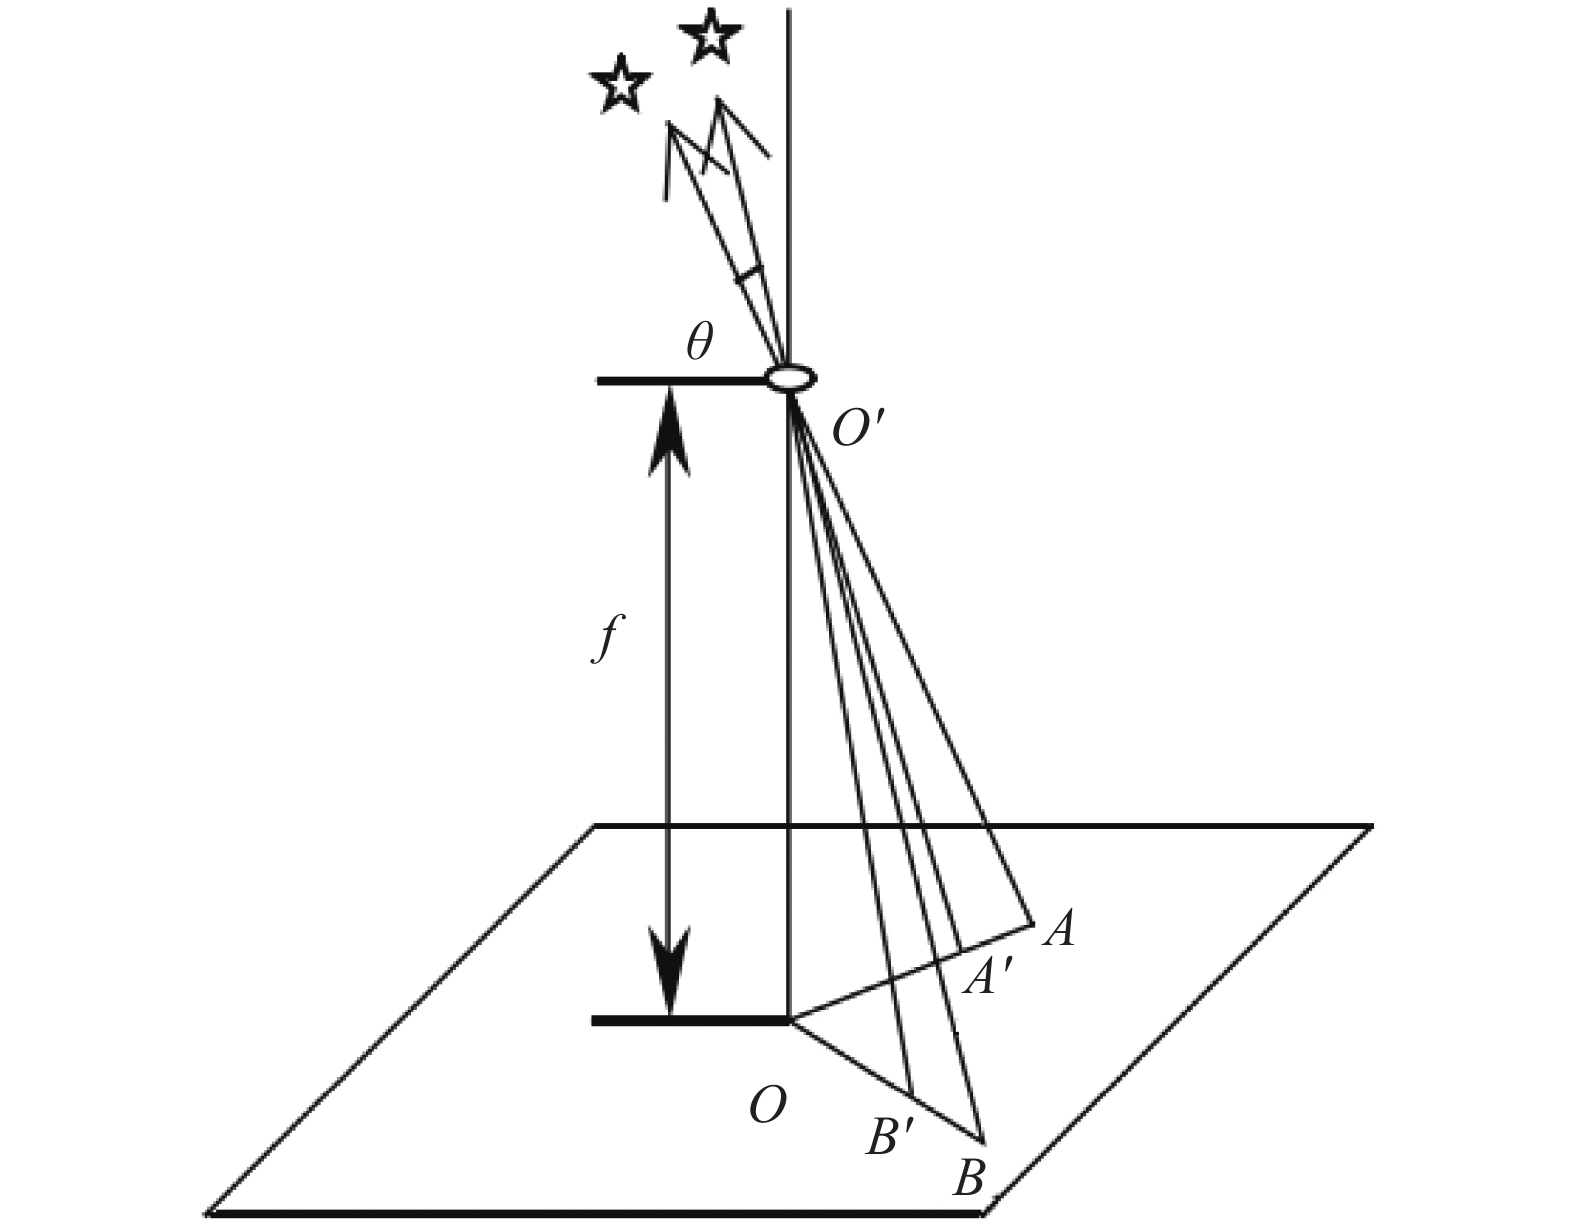 Imaging model of the star sensor